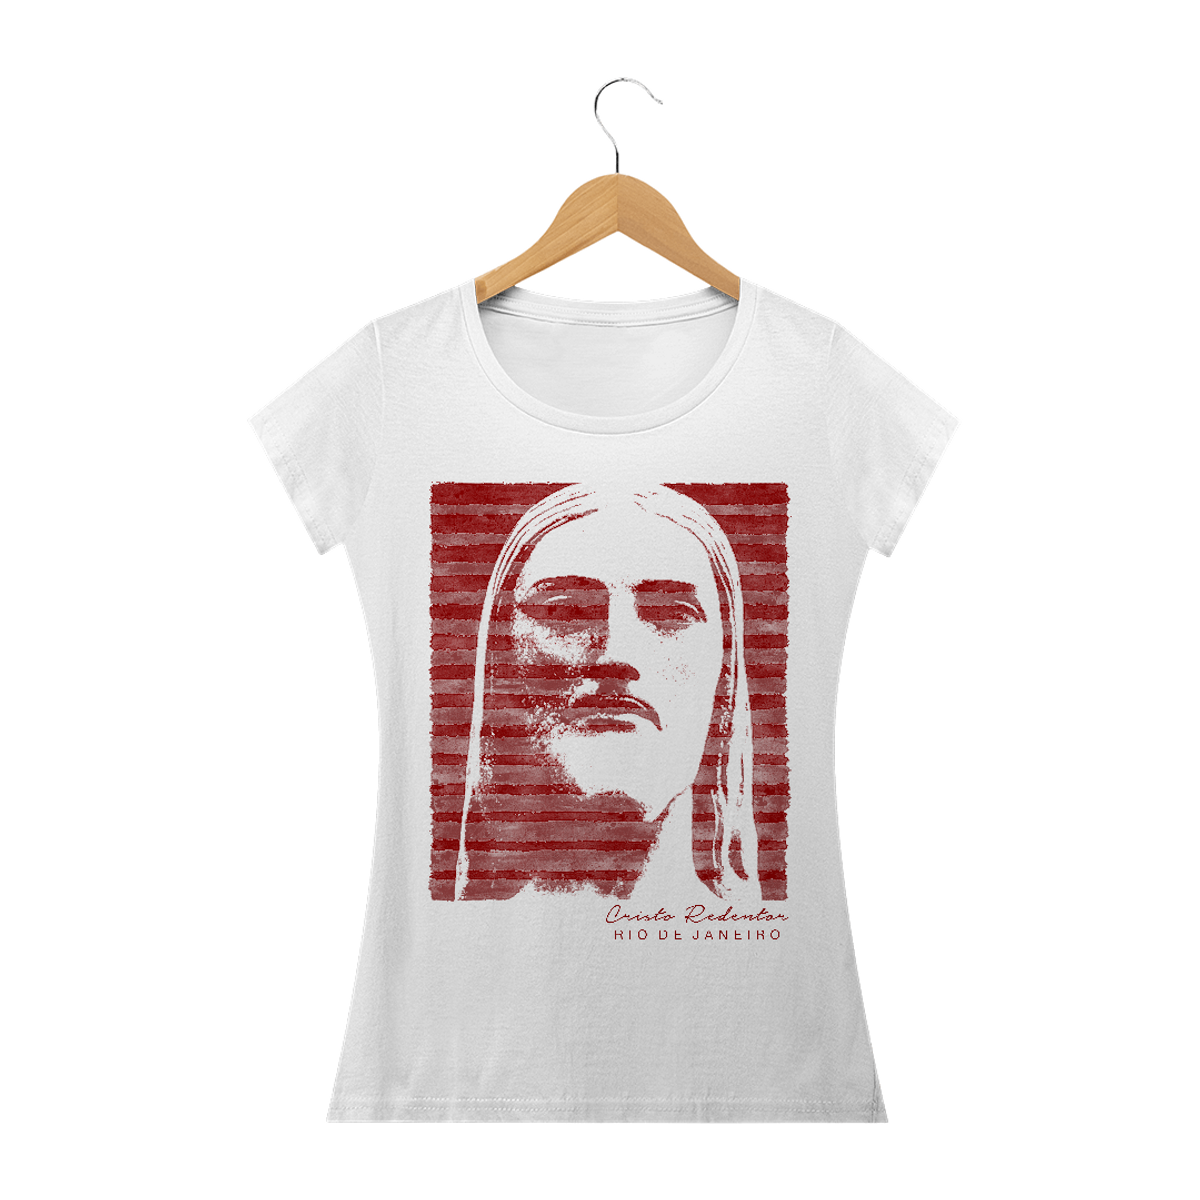 Nome do produto: Camiseta Feminina Cristo Redentor listras vermelhas